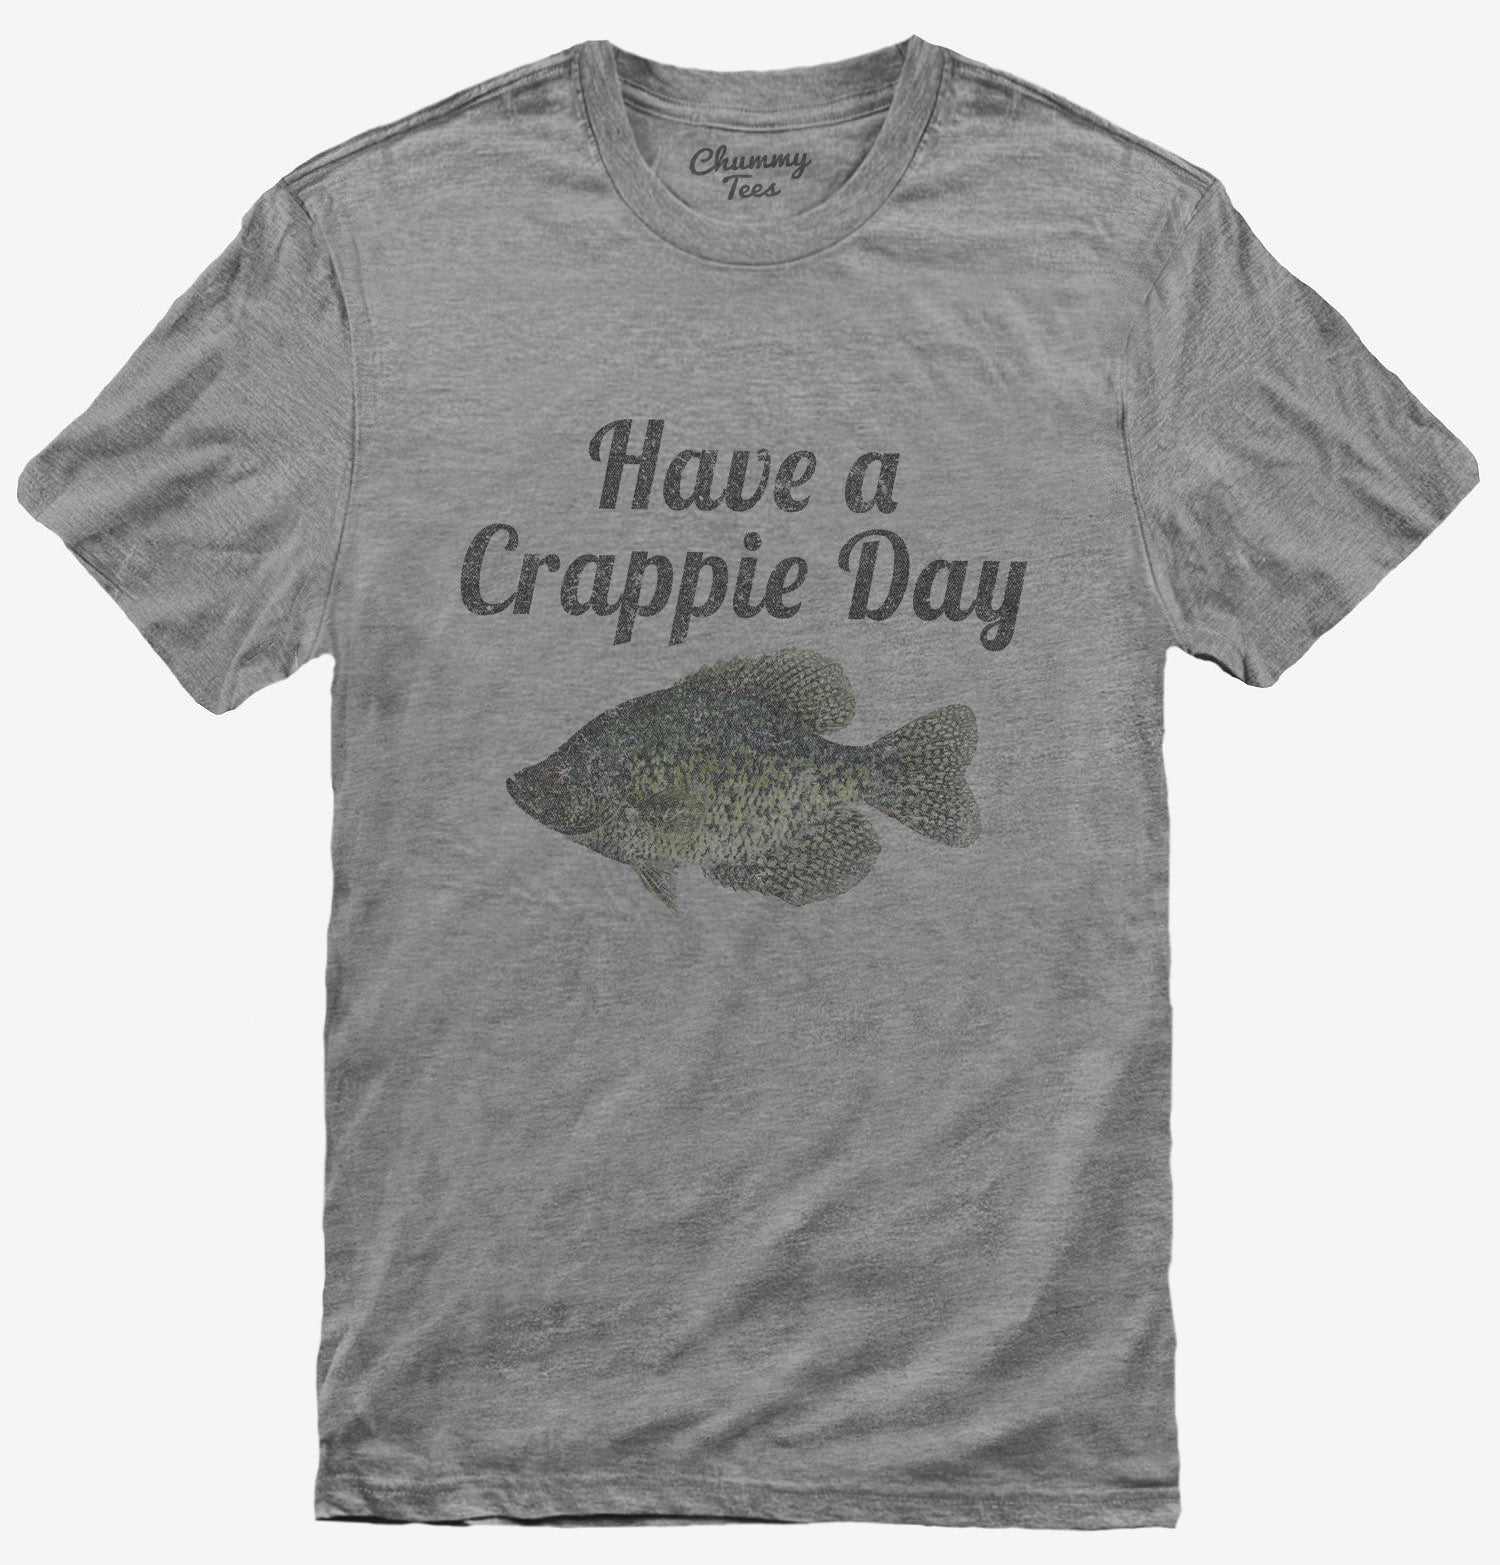 Funny Fishing T-Shirt